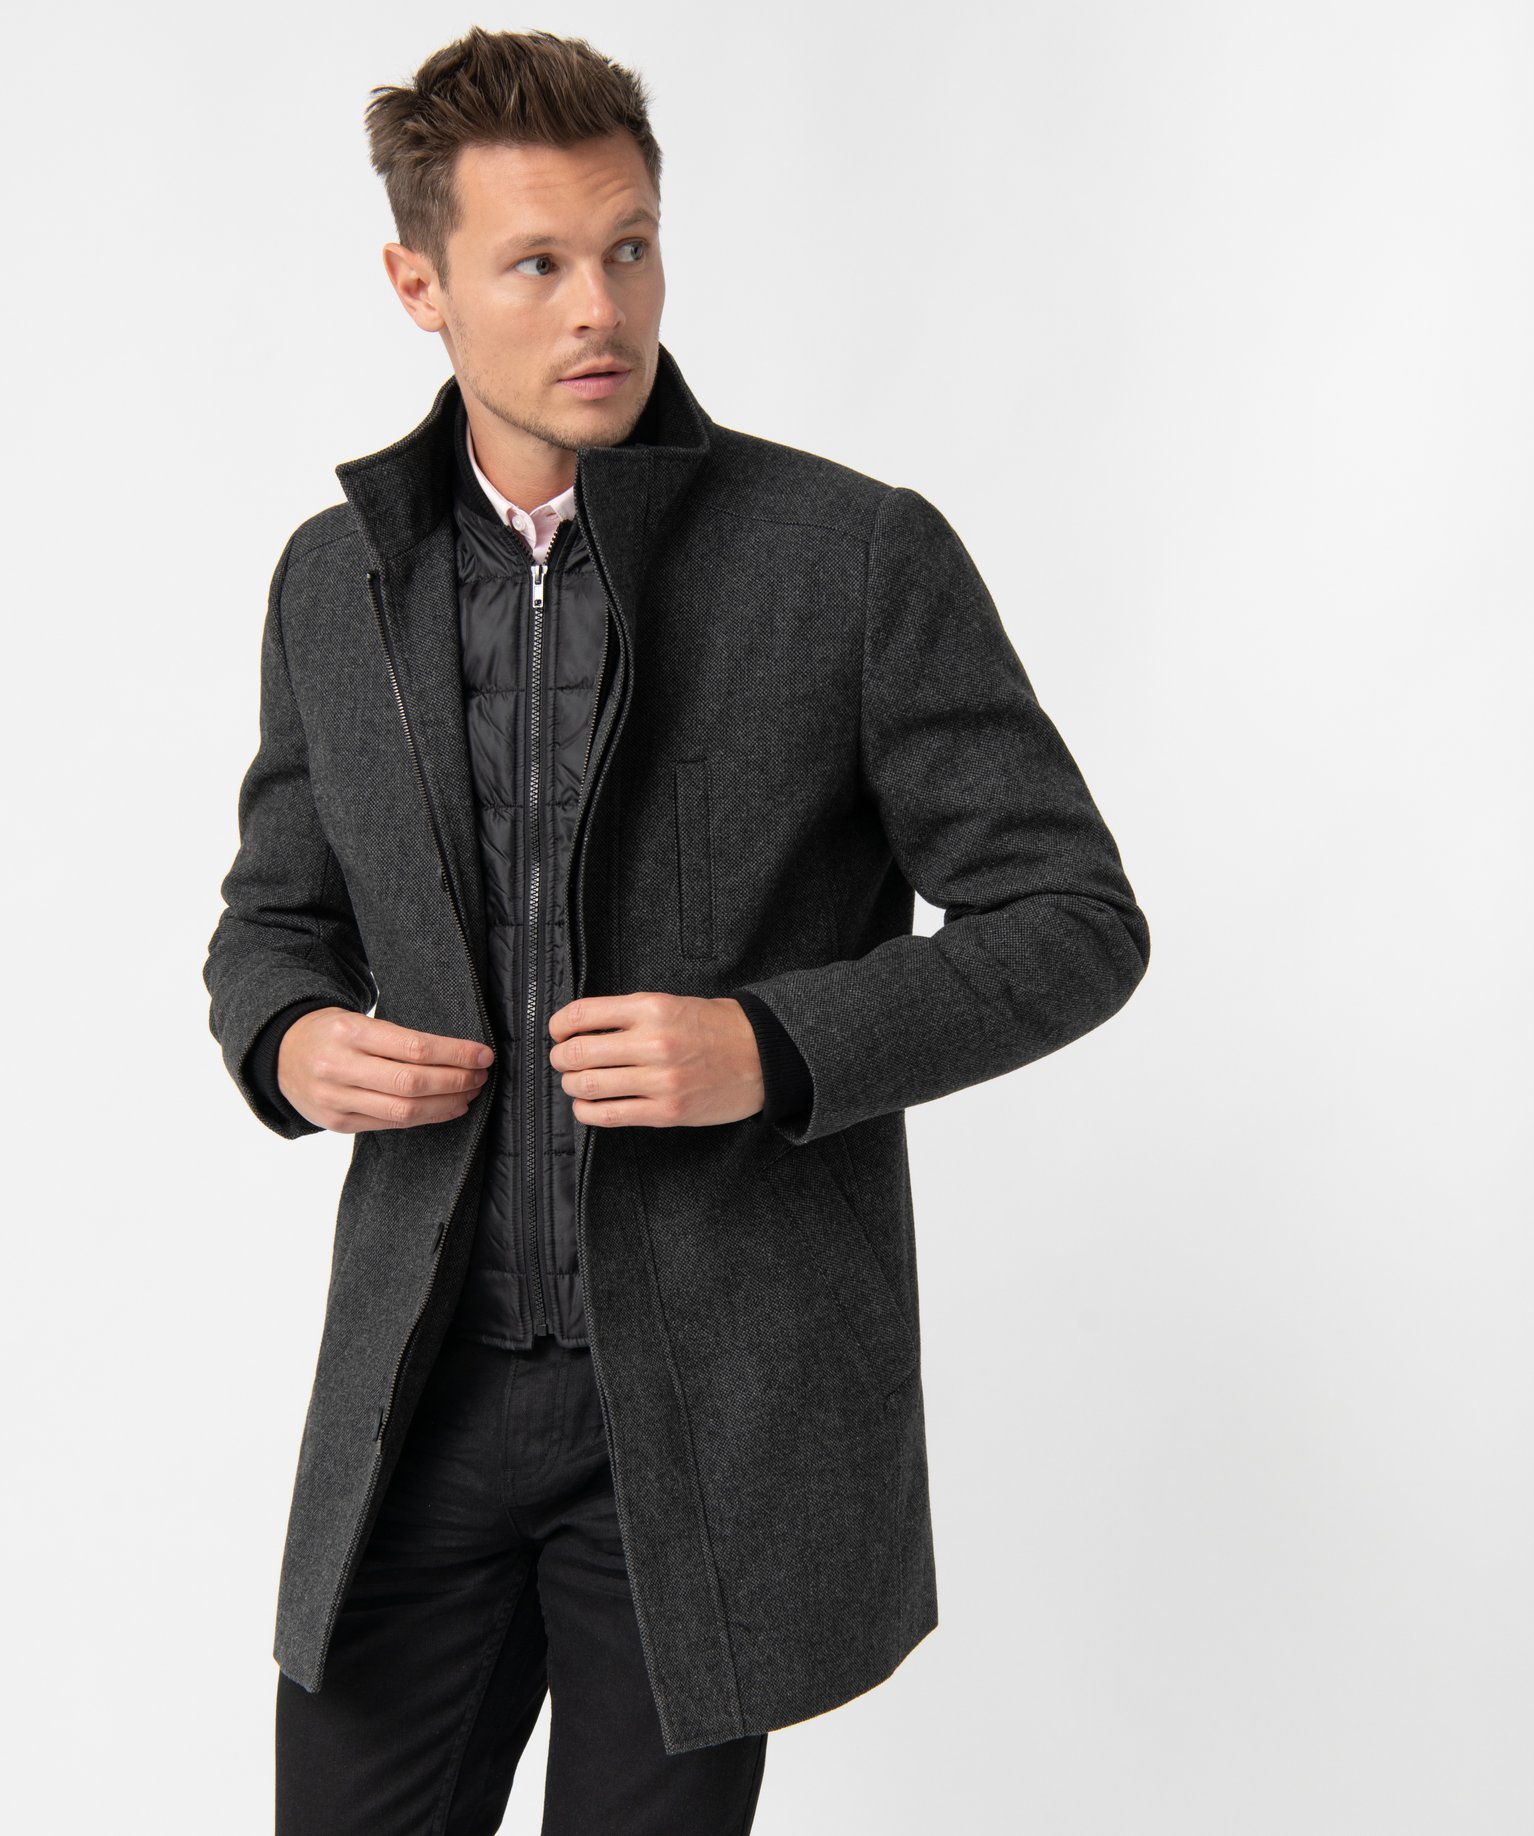 manteau homme court avec col interieur amovible noir manteaux et